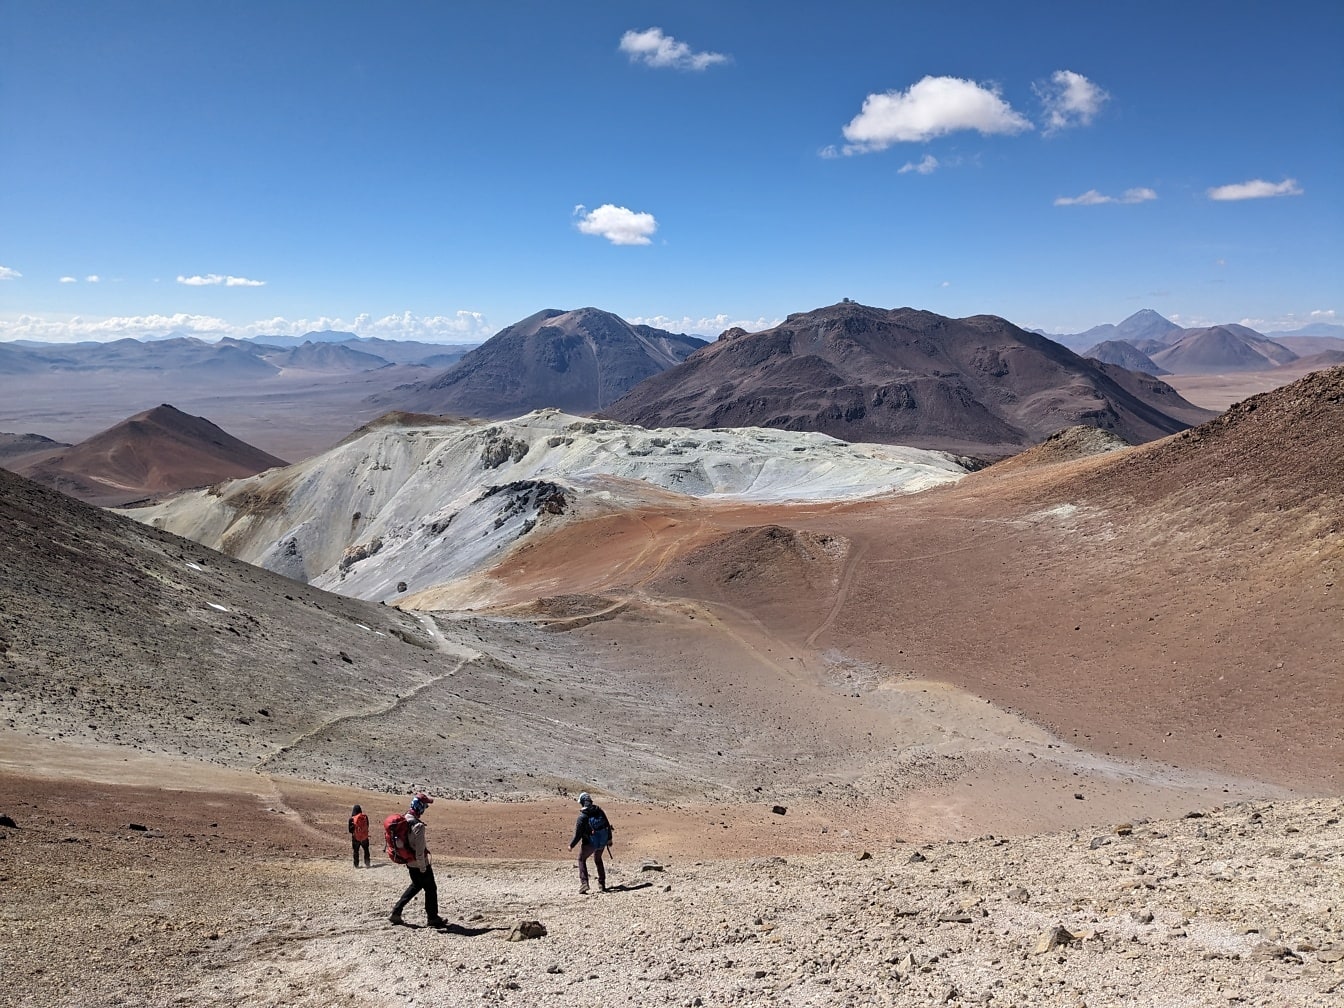 Personnes marchant sur le sommet d’une montagne désertique Cerro Toco au Chili